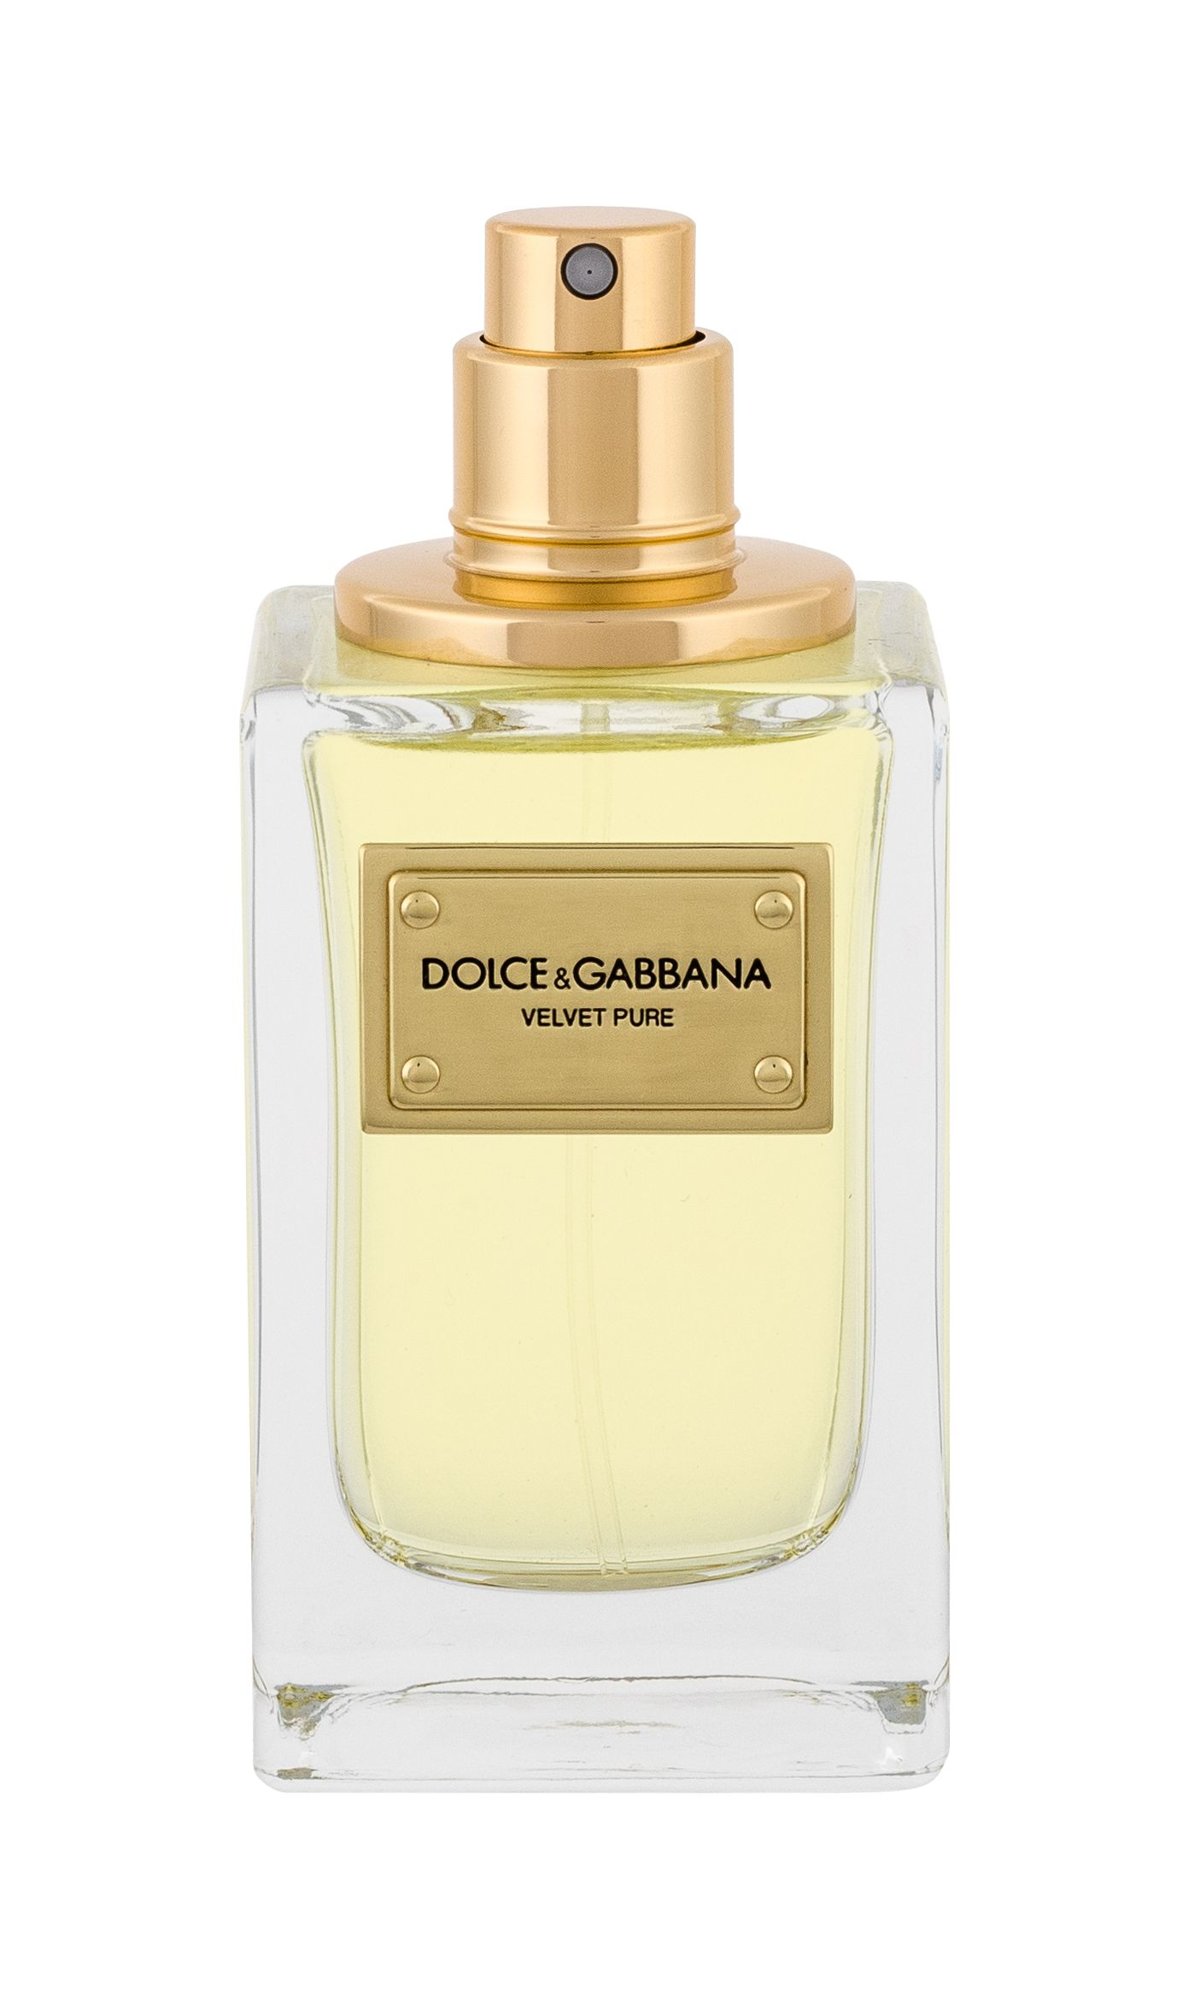 Dolce&Gabbana Velvet Pure